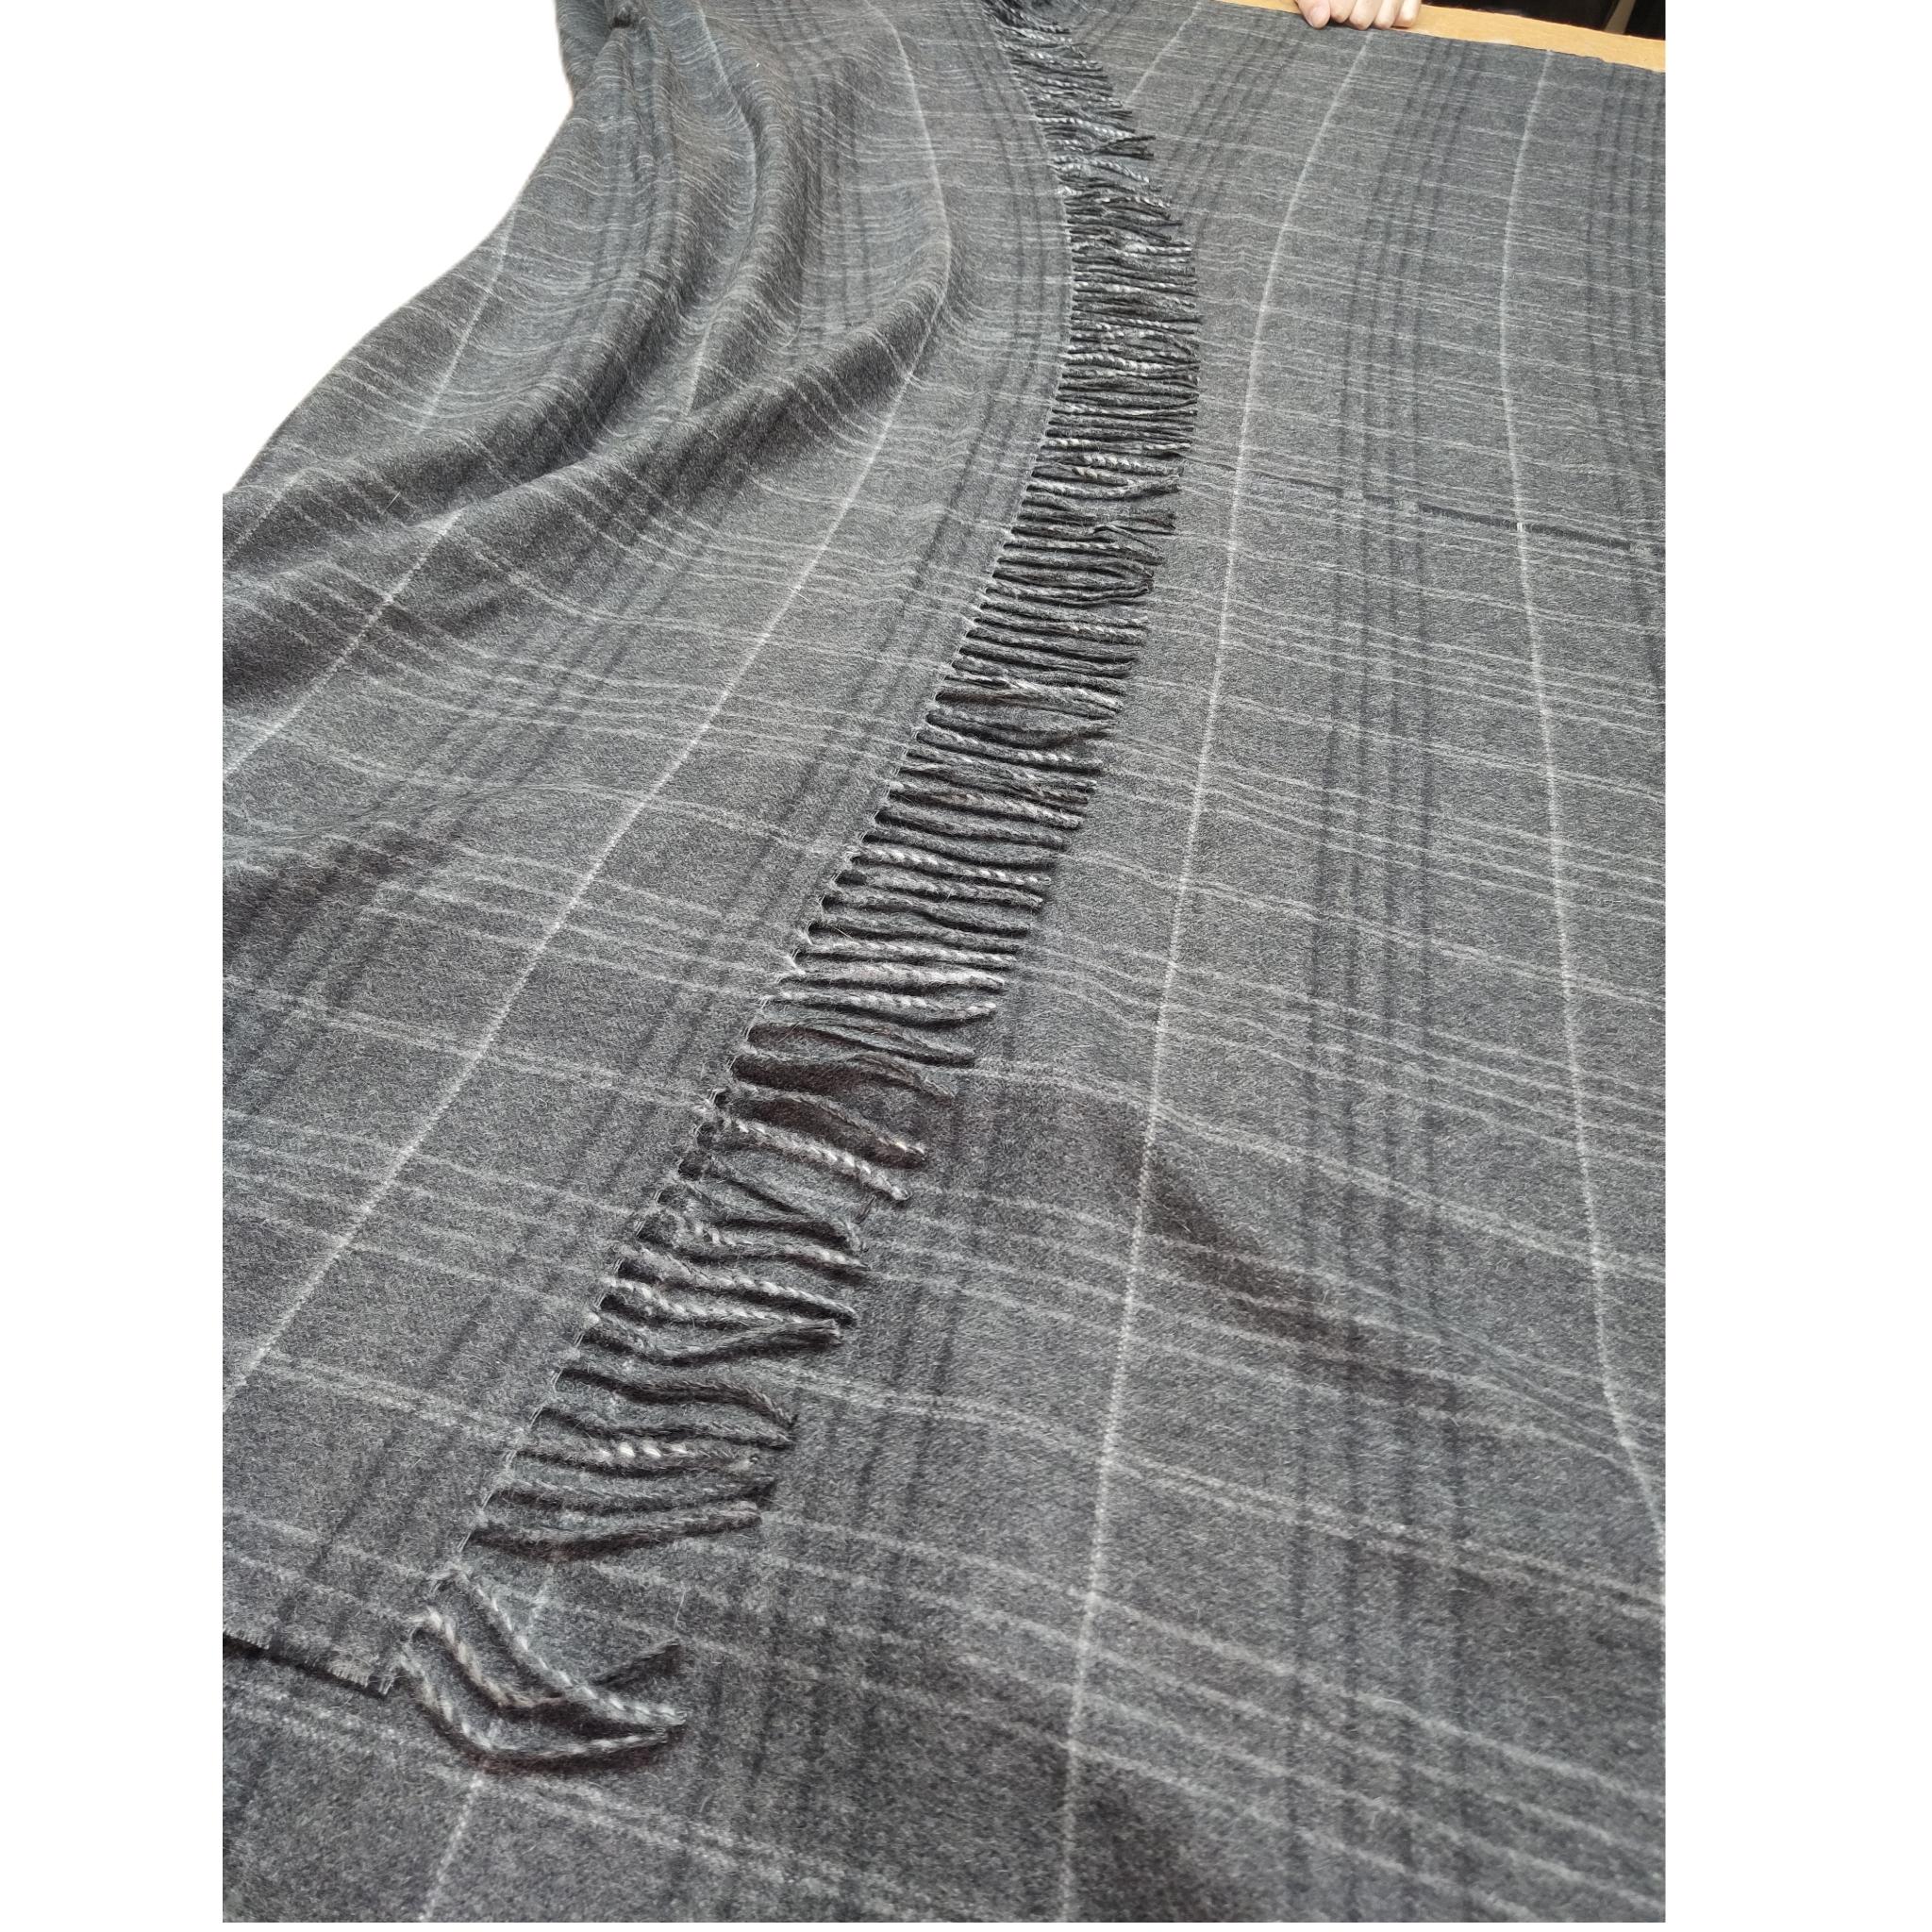 Brandneue Loro Piana-Decke aus 100% Kaschmir 

Einzelheiten:

75 Zoll lange Länge

60 Zoll breite Länge

Tags enthalten

Zertifizierte Lusterized Tags garantieren 12 Monate Schutz
